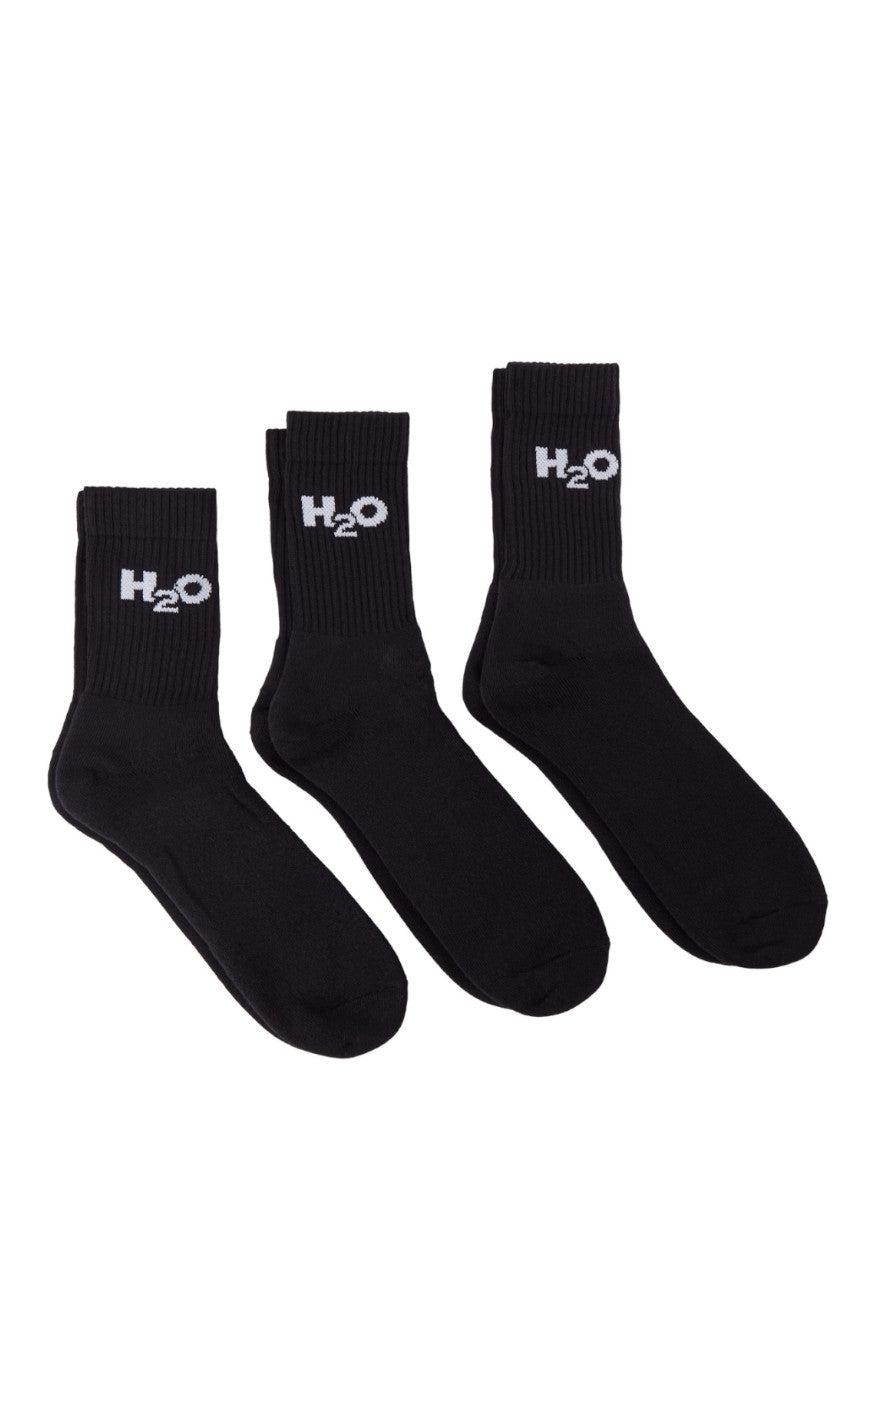 12: H2O Strømper - 3-Pack  - Black